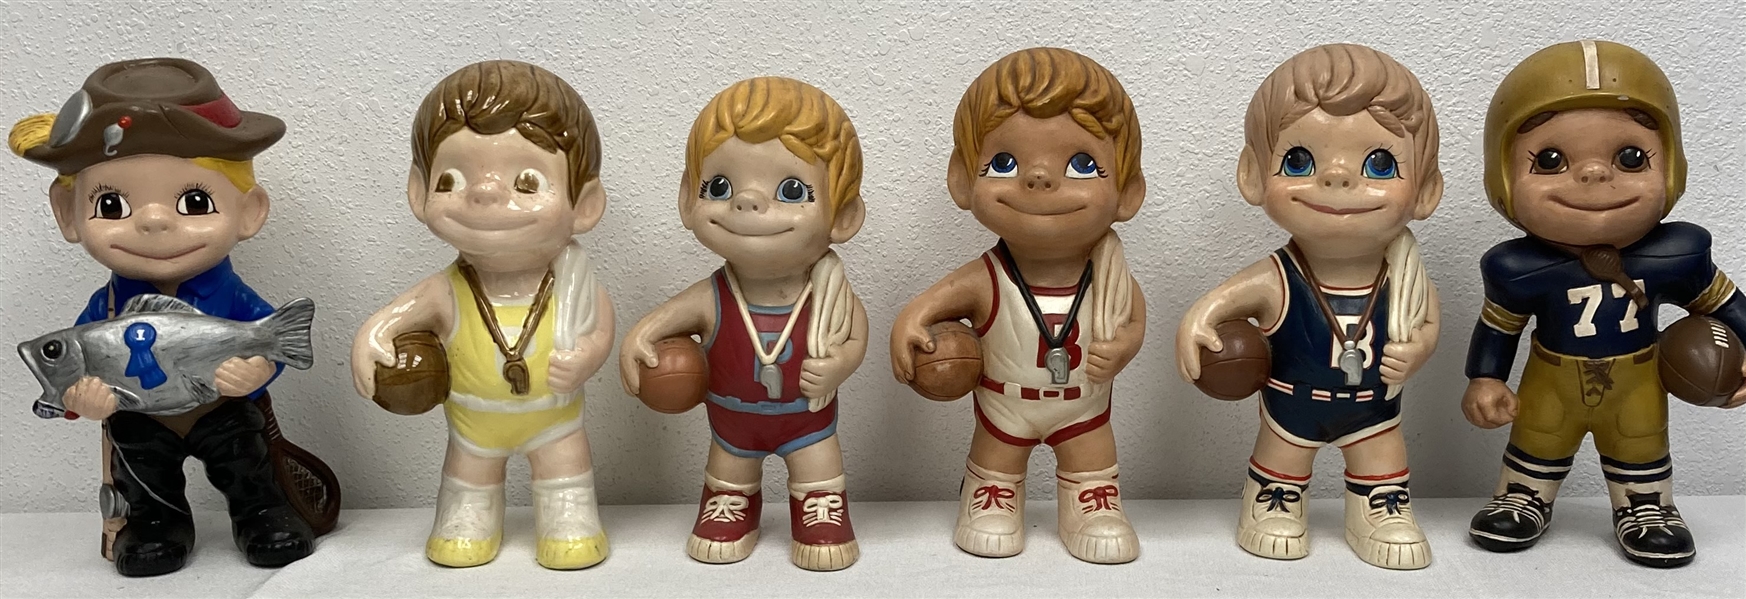 1970s vintage 6" figurines (6)